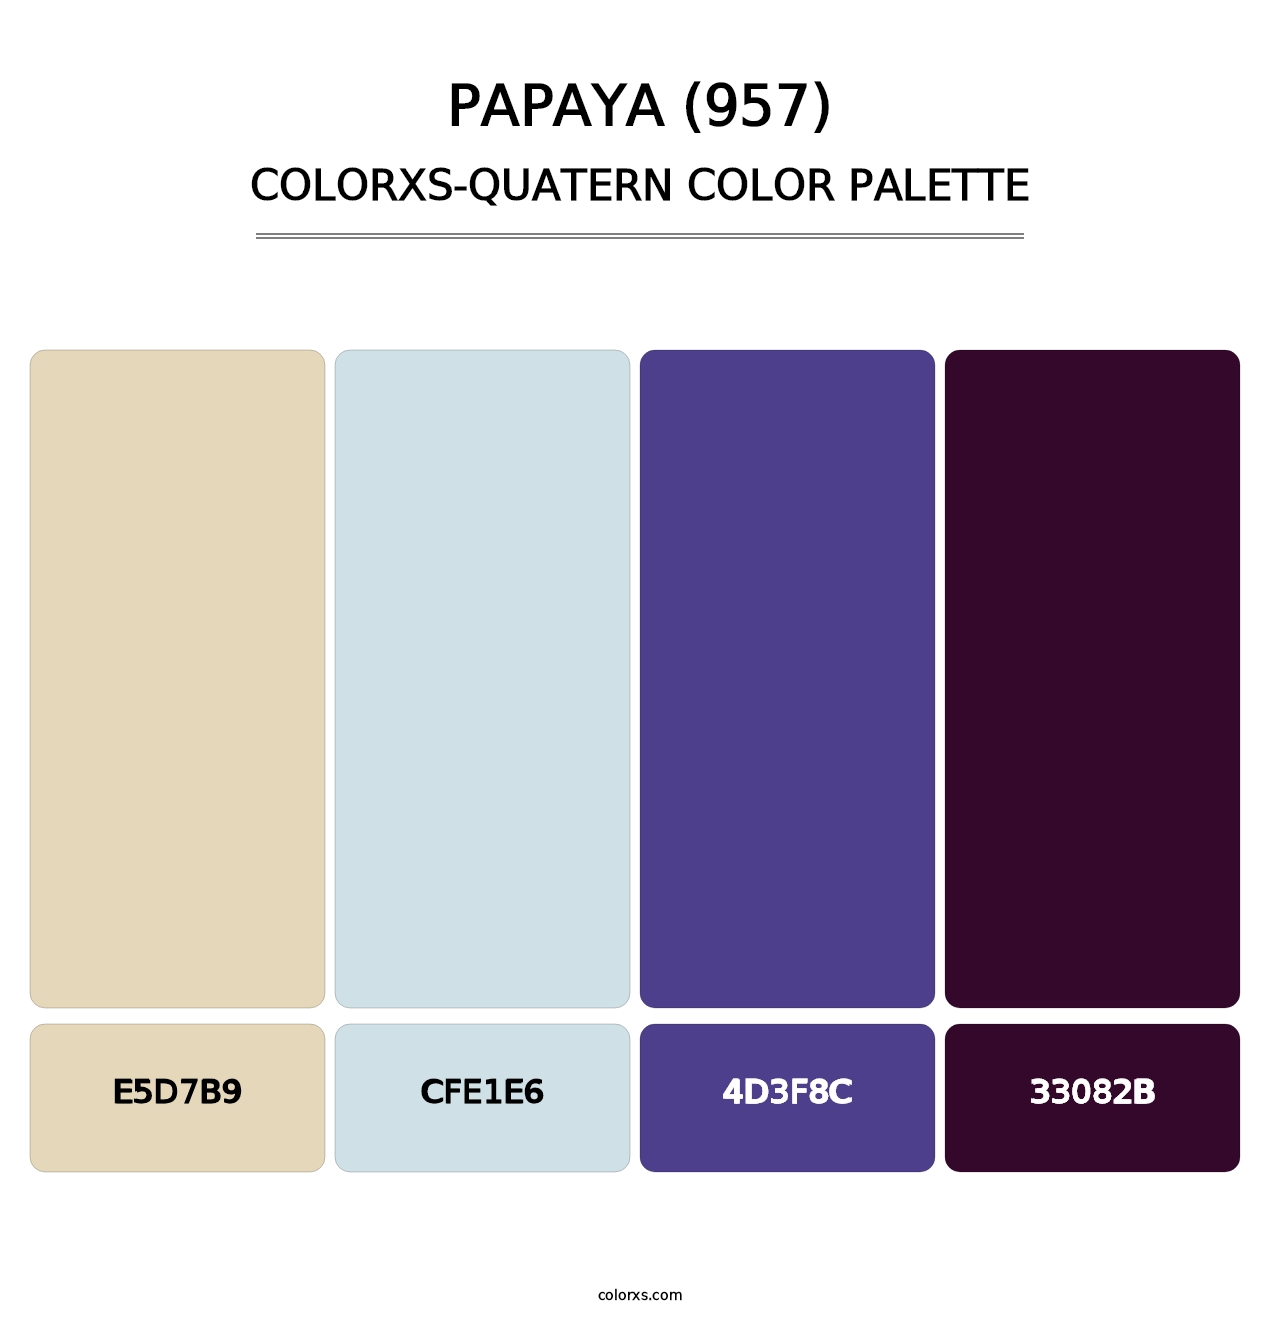 Papaya (957) - Colorxs Quatern Palette